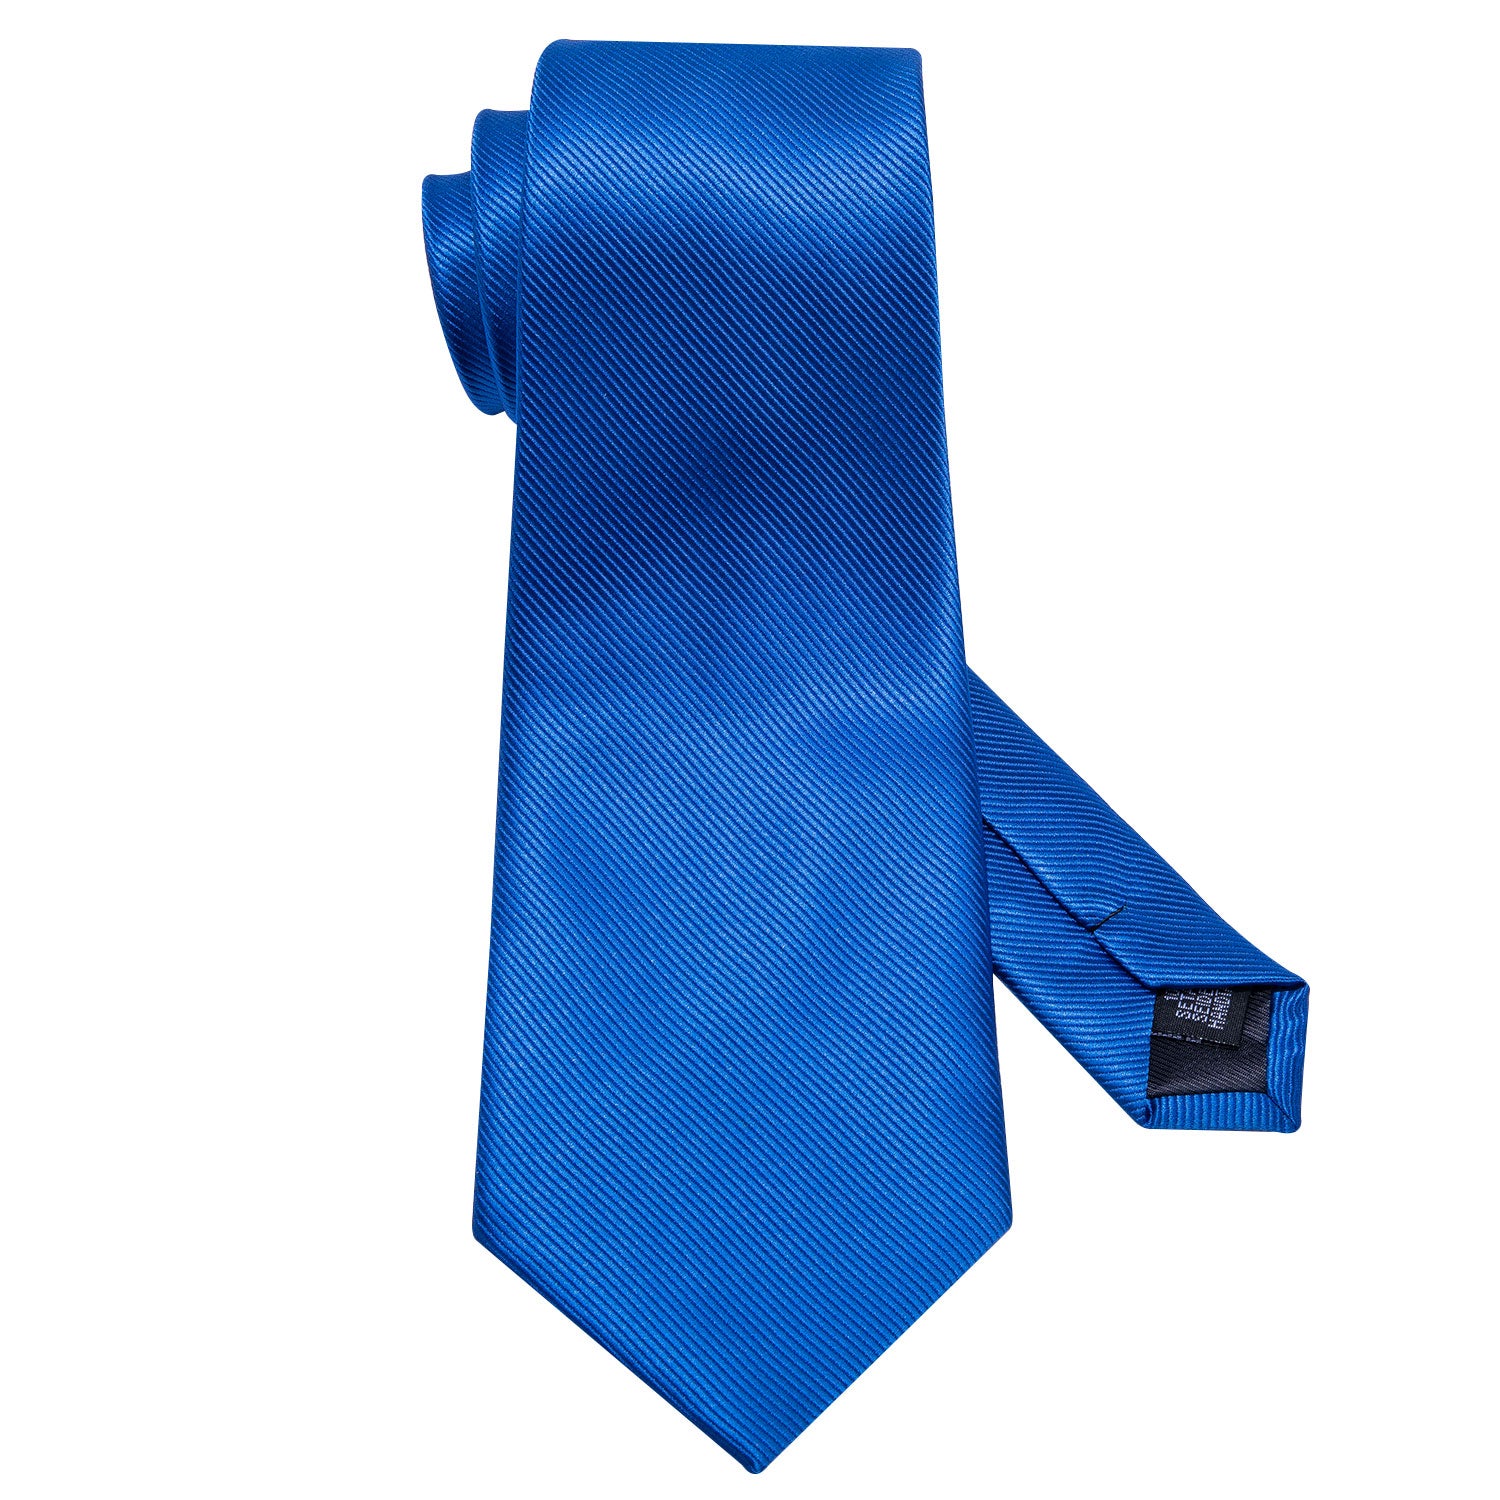 men's light blue tie